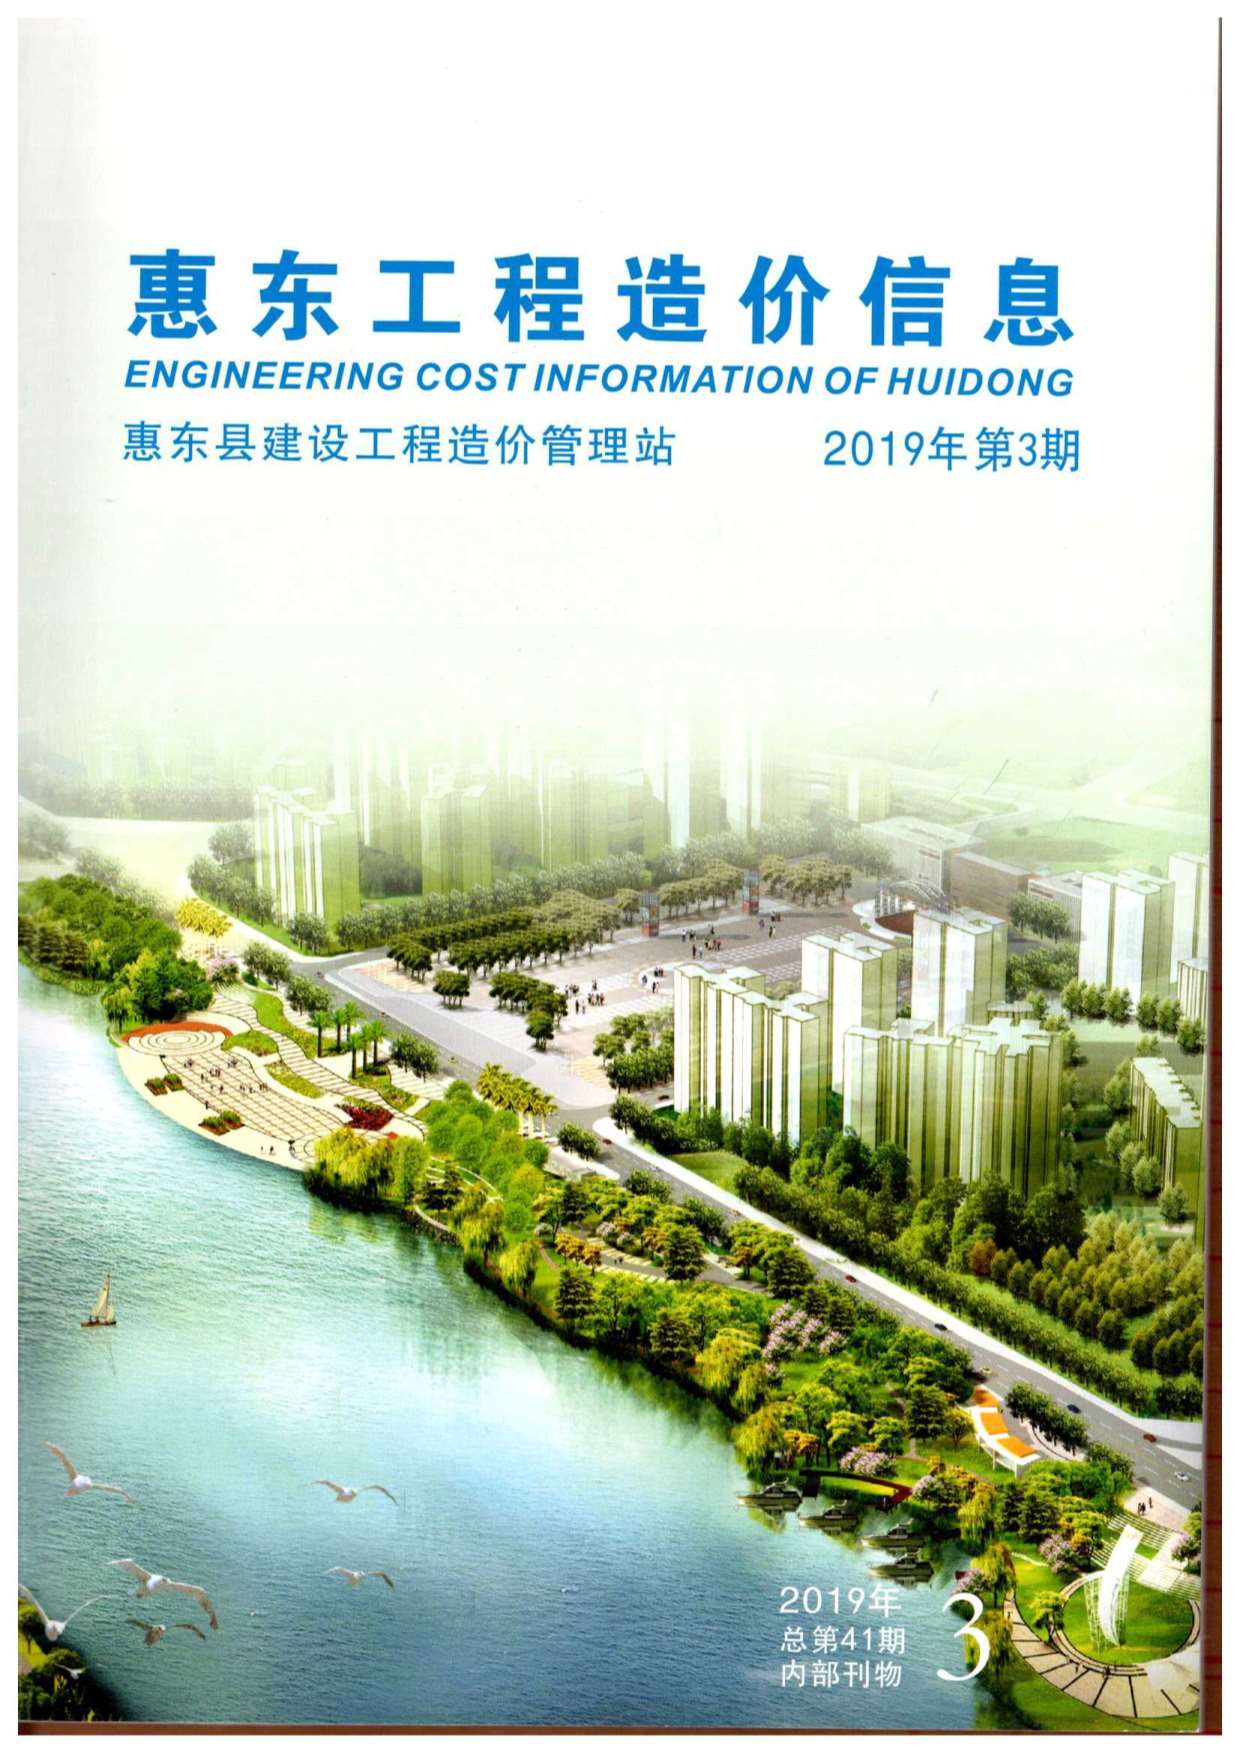 惠东市2019年3月建设工程造价信息